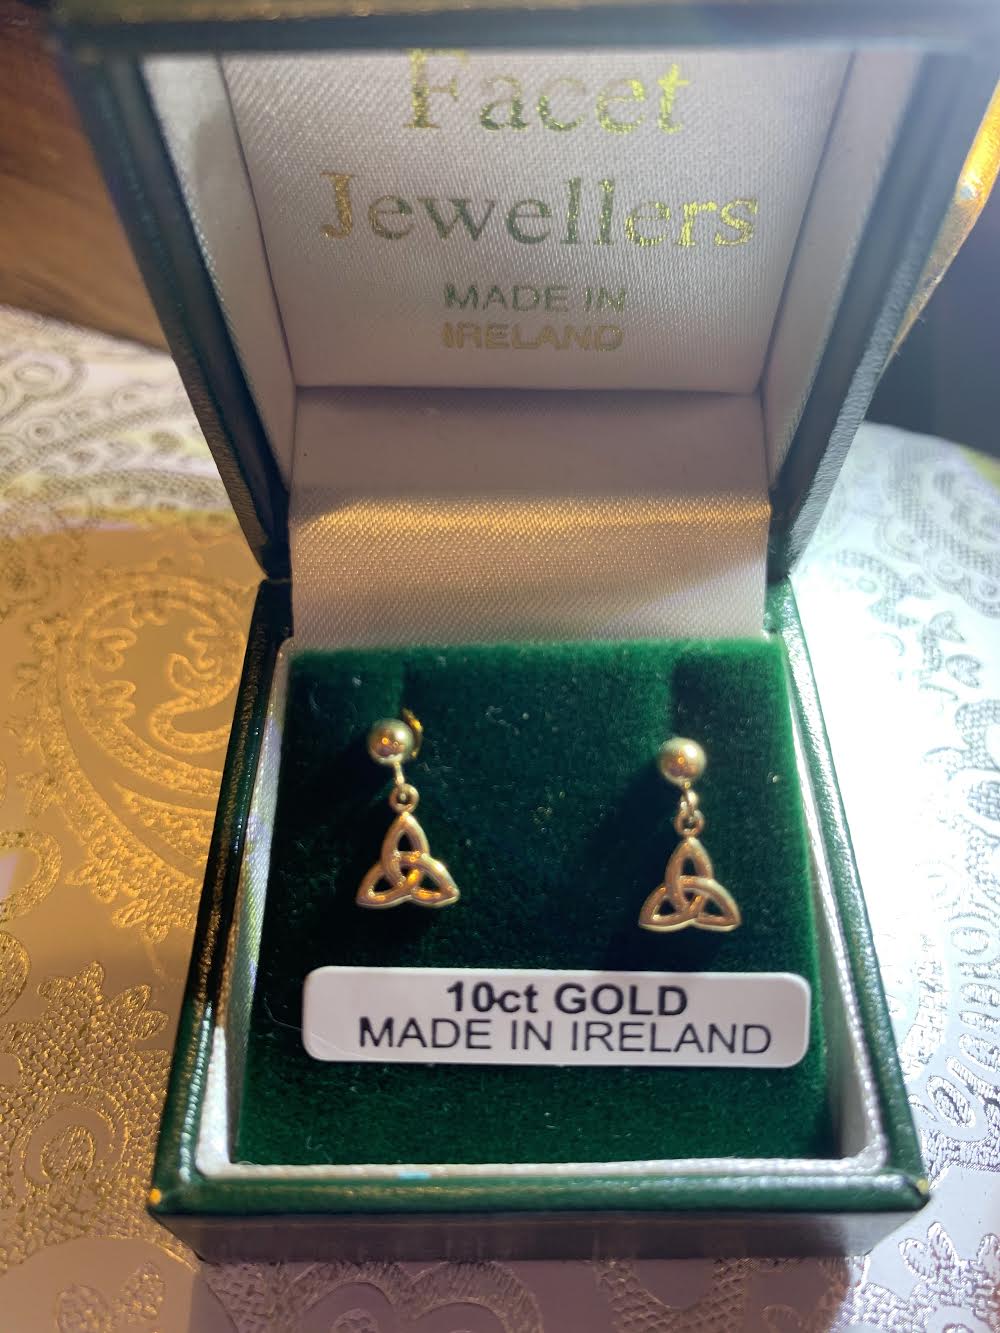 10K Gold Trinity Earrings